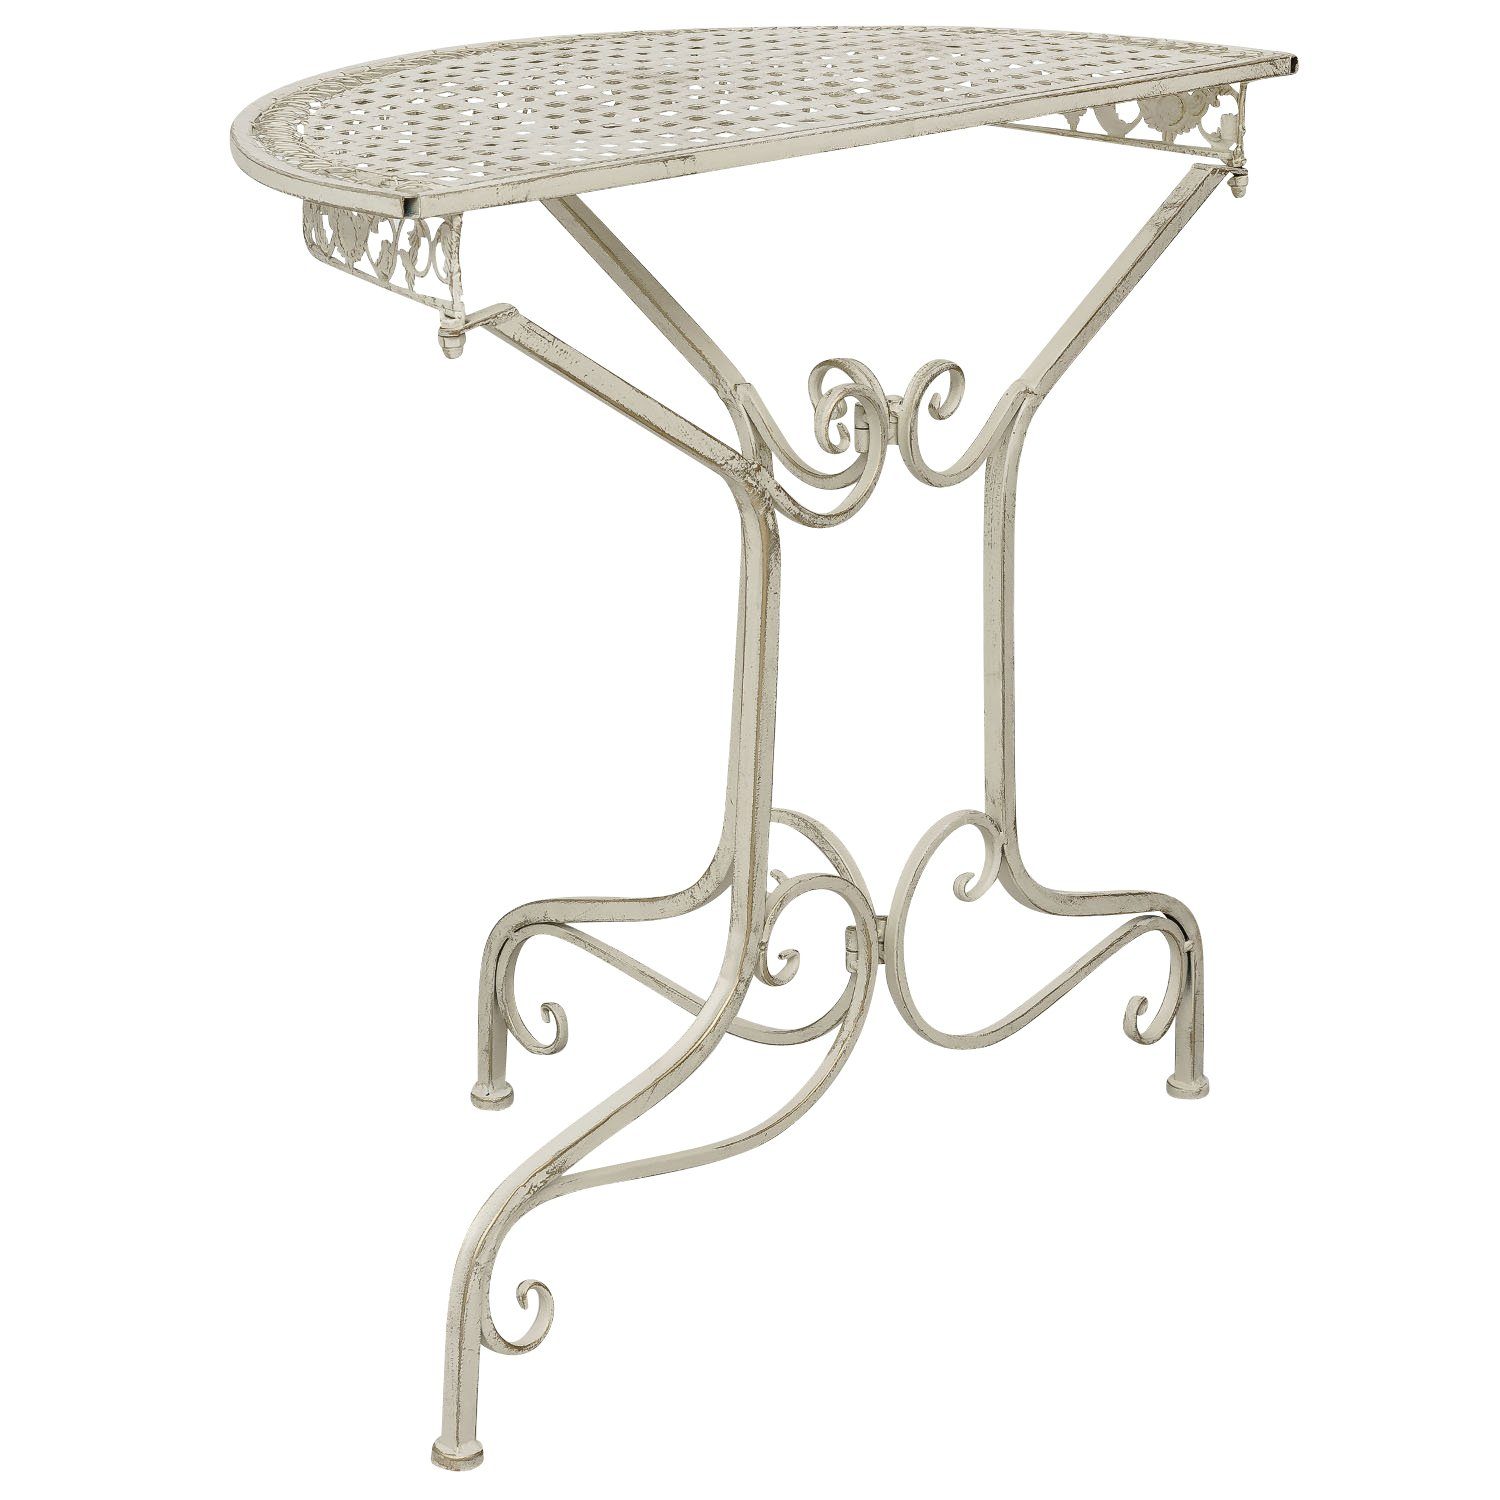 Ko Gartentisch Gartentisch halbrund Balkontisch weiss Tisch Aubaho Eisen Antik-Stil creme